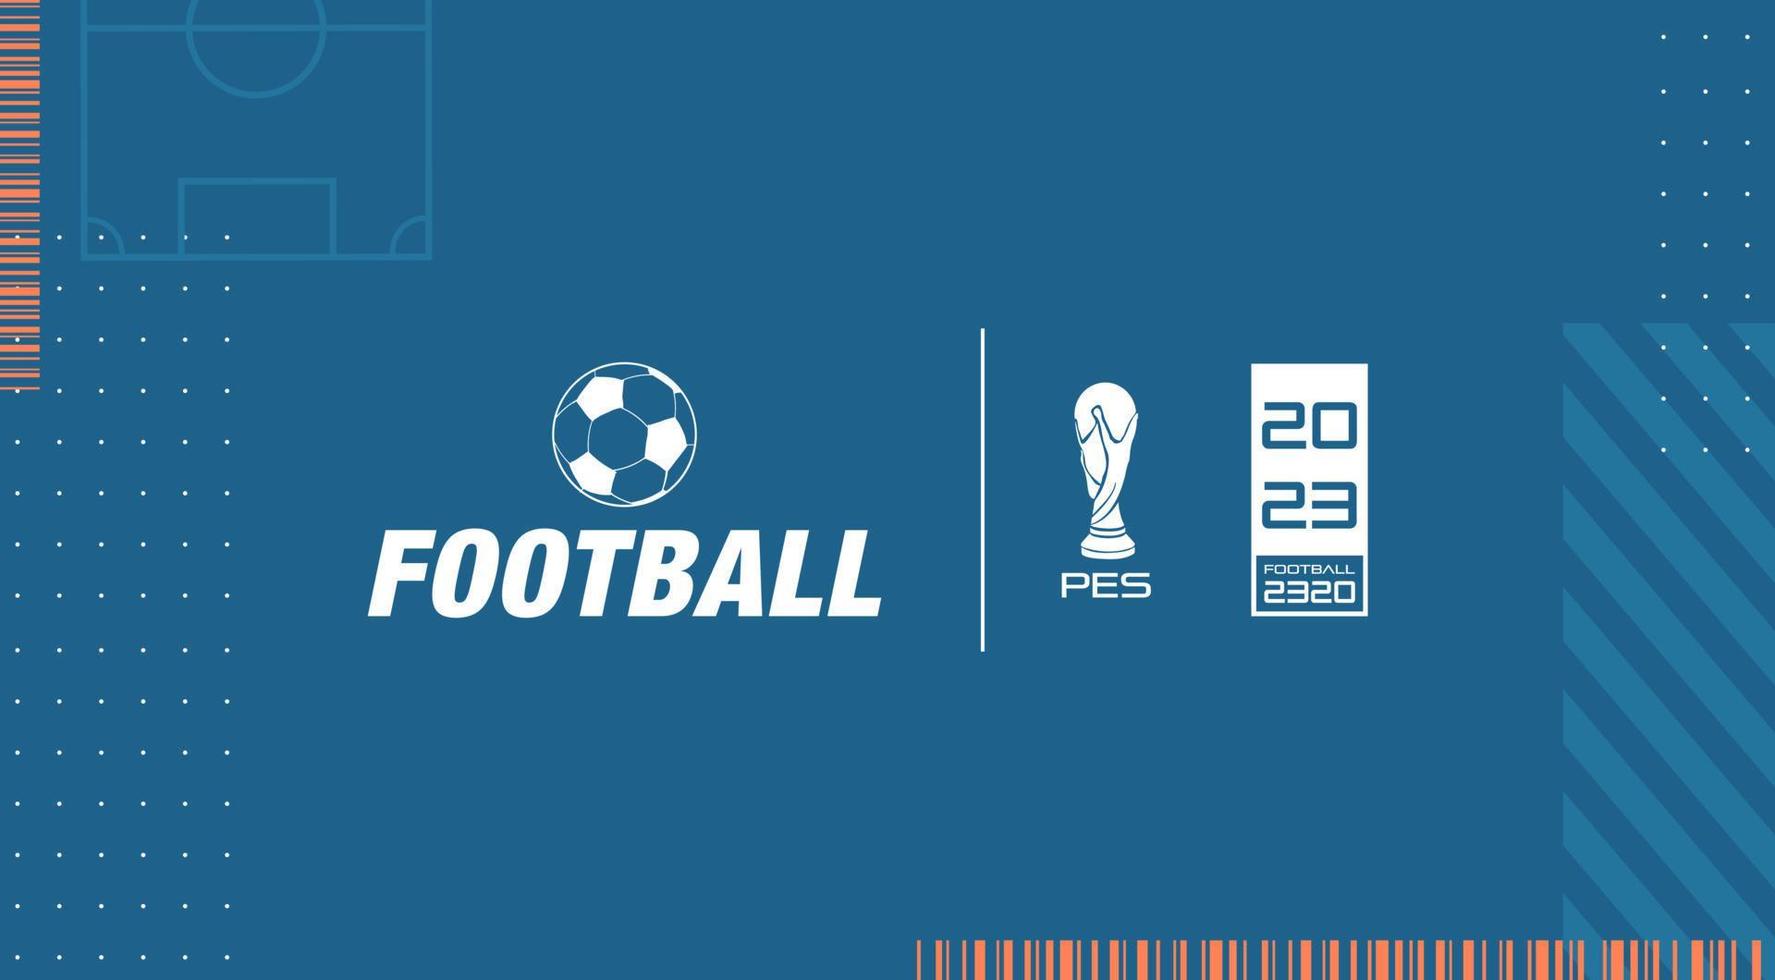 clave visual abstracta futurista. banner con campo de fútbol, patrones e íconos inspirados en los videojuegos de fútbol. pantalla de menú para videojuegos deportivos. vector